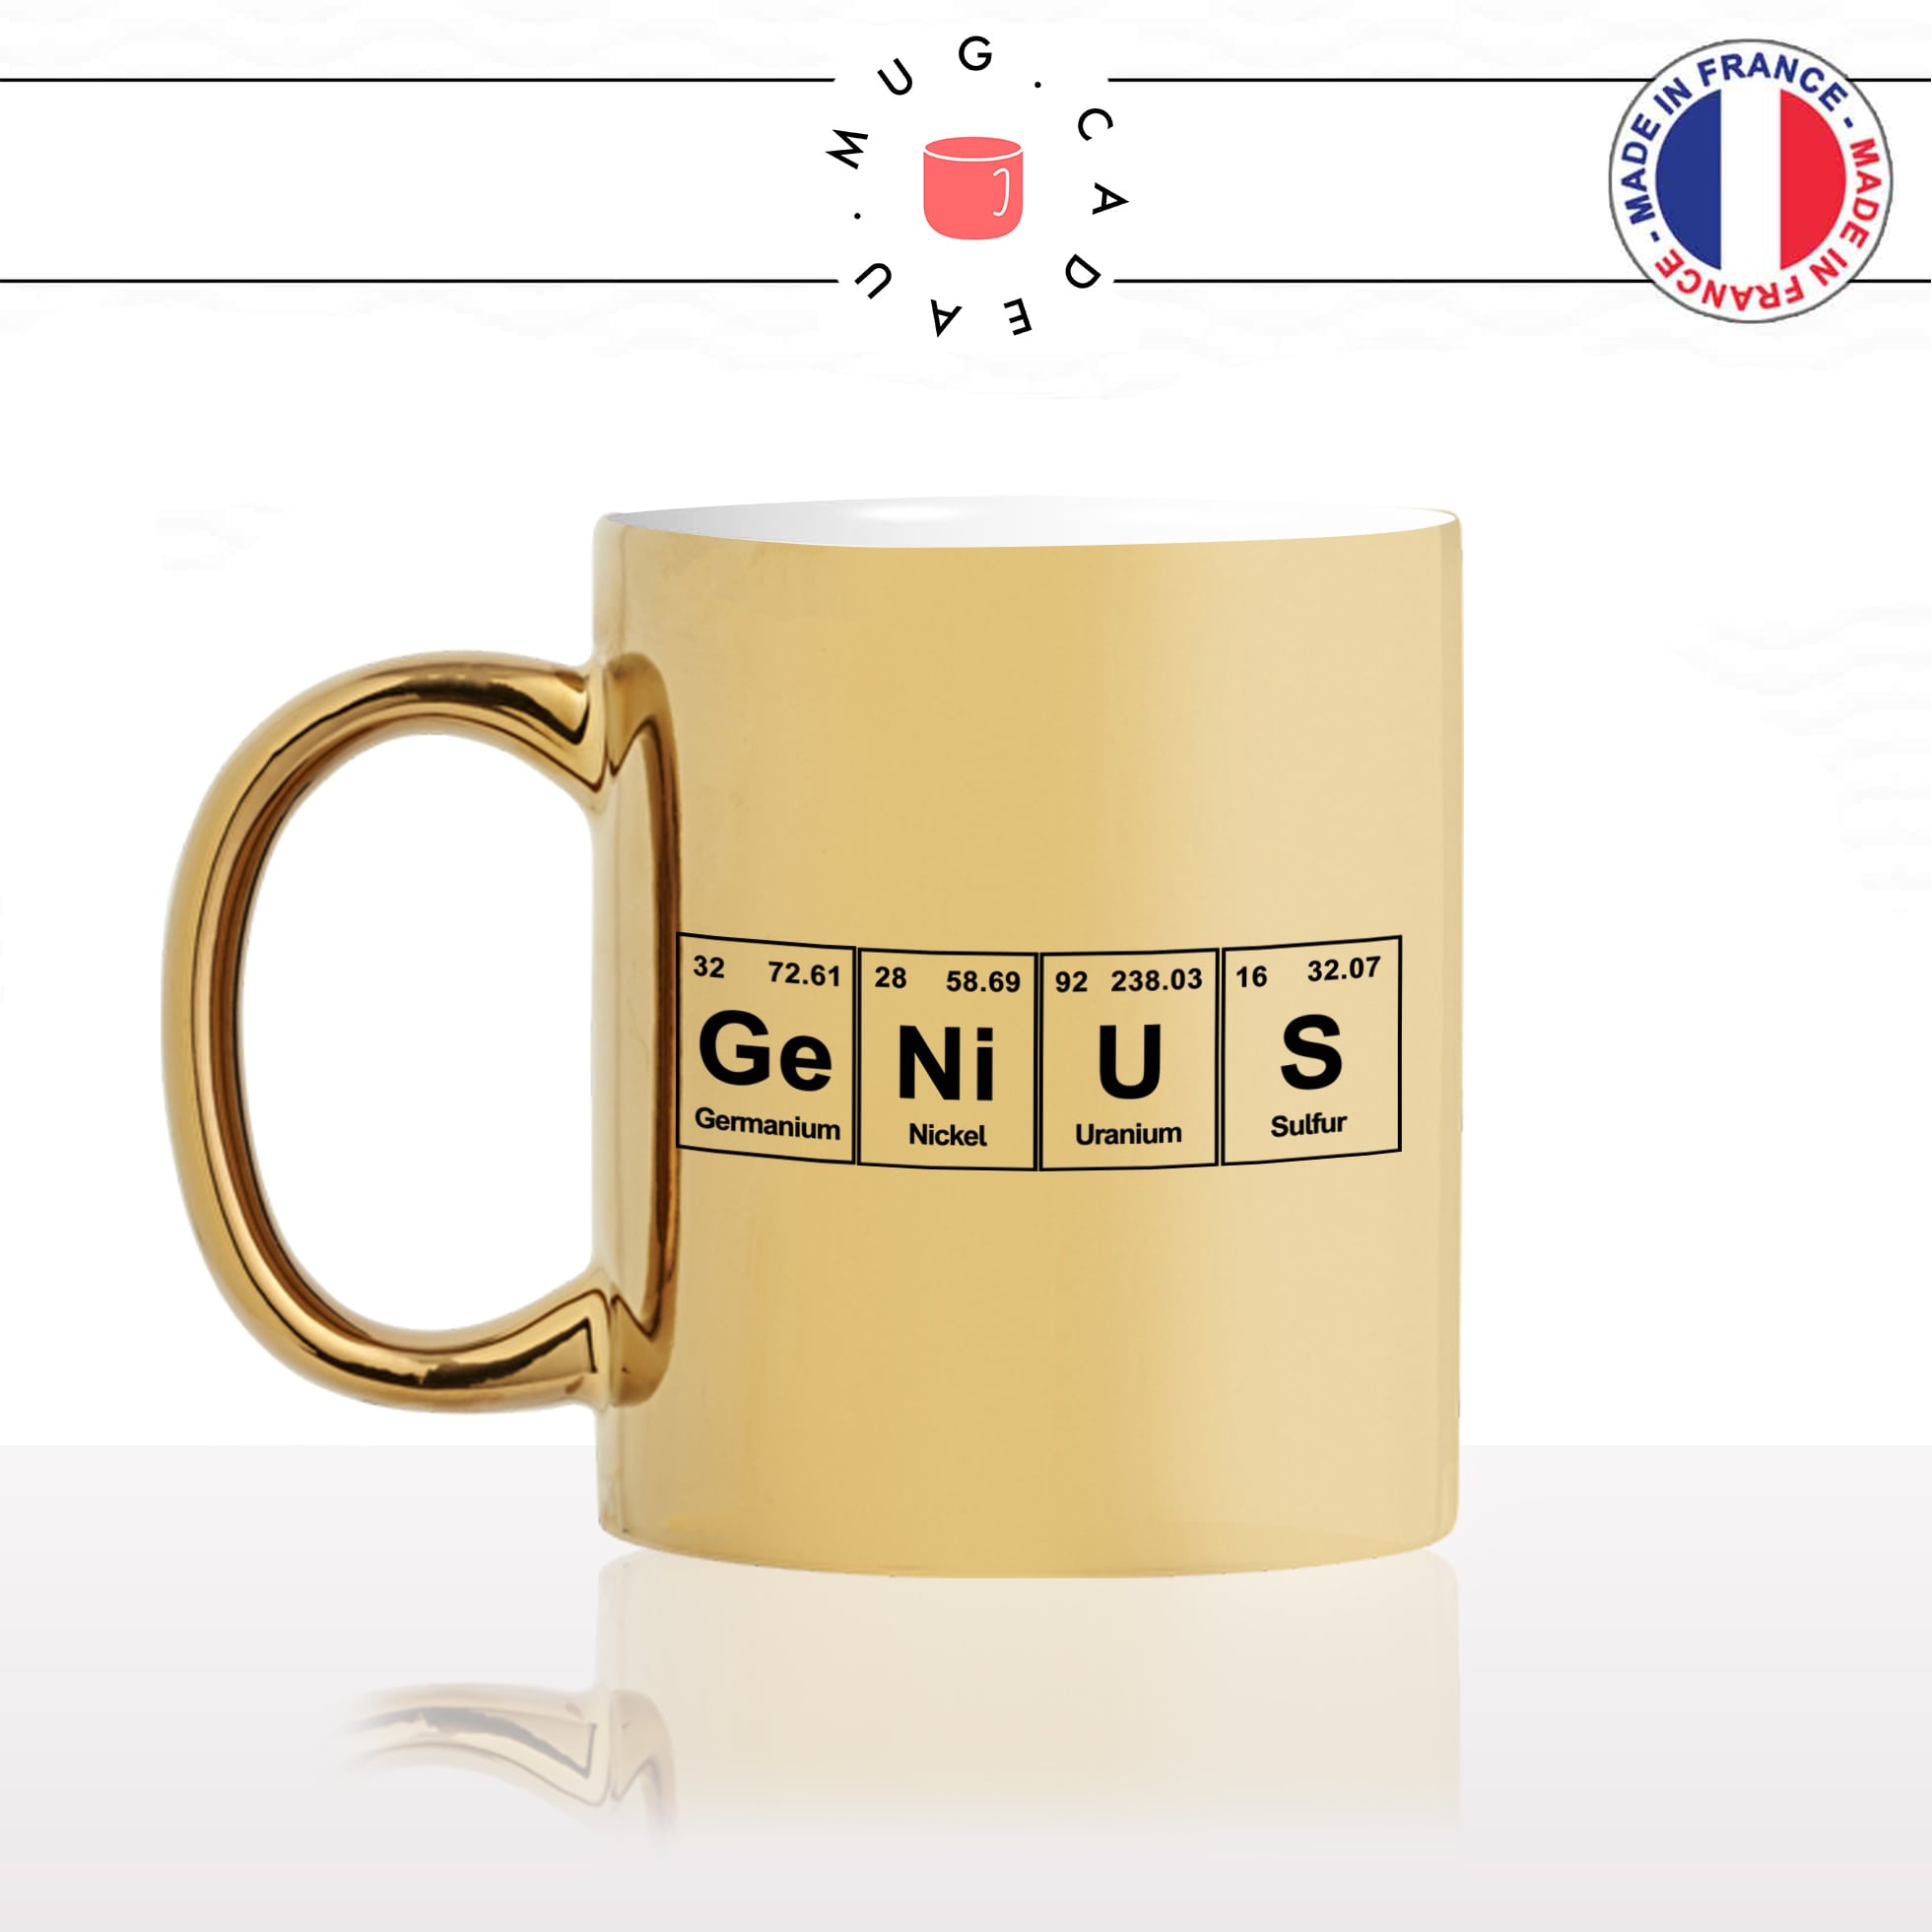 mug-tasse-or-gold-doré-geek-genius-element-periodique-science-genie-drole-pc-ordi-gamer-gaming-humour-idée-cadeau-personnalisé-café-thé-min